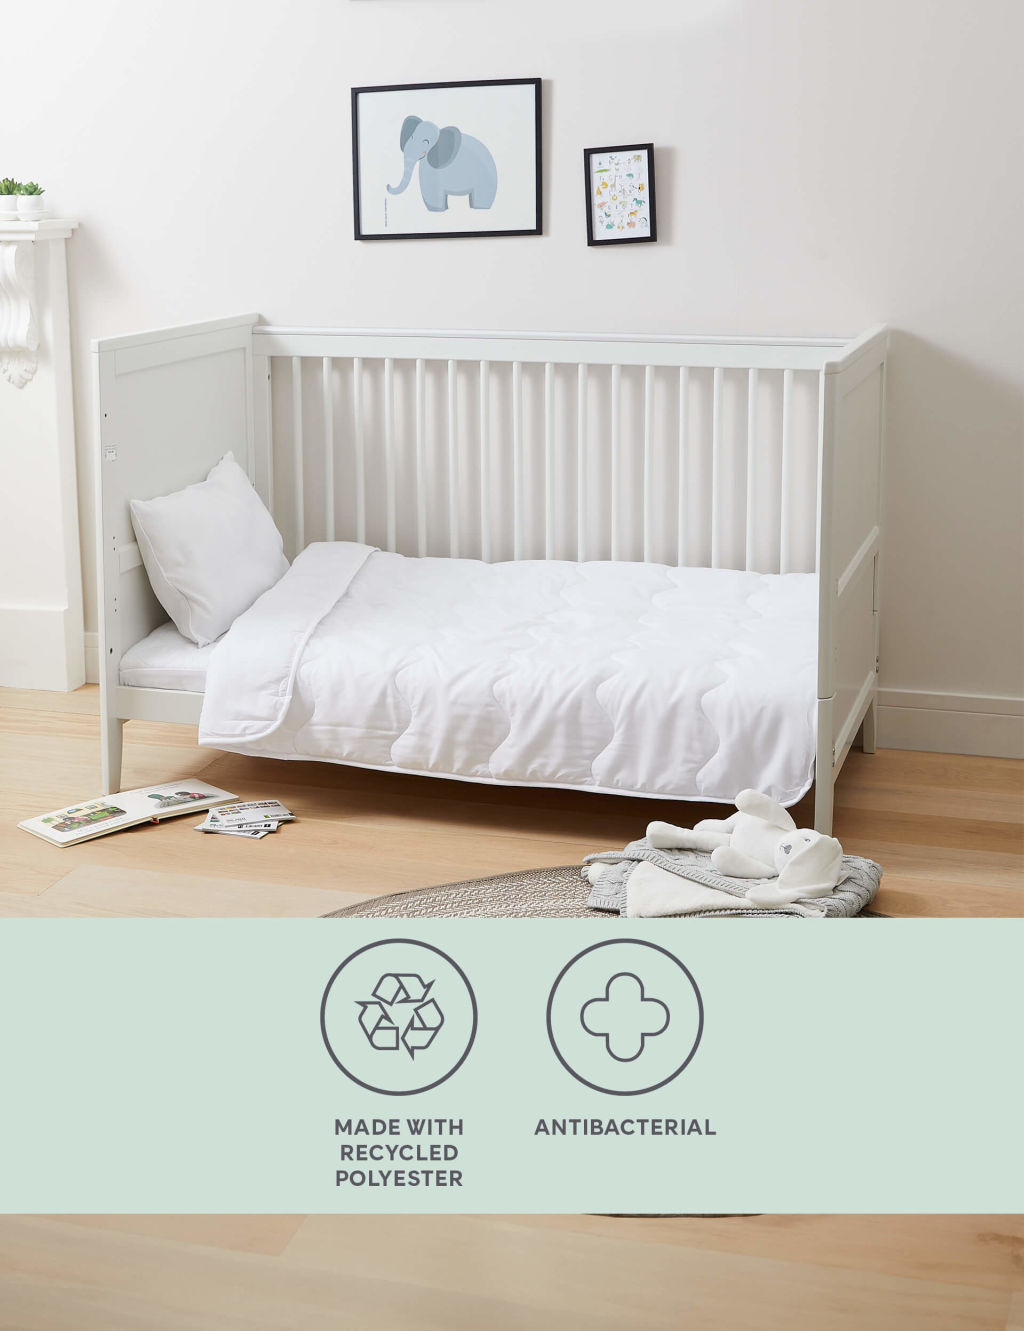 Antibacterial Cot Bed Duvet & Pillow Set 1 of 2